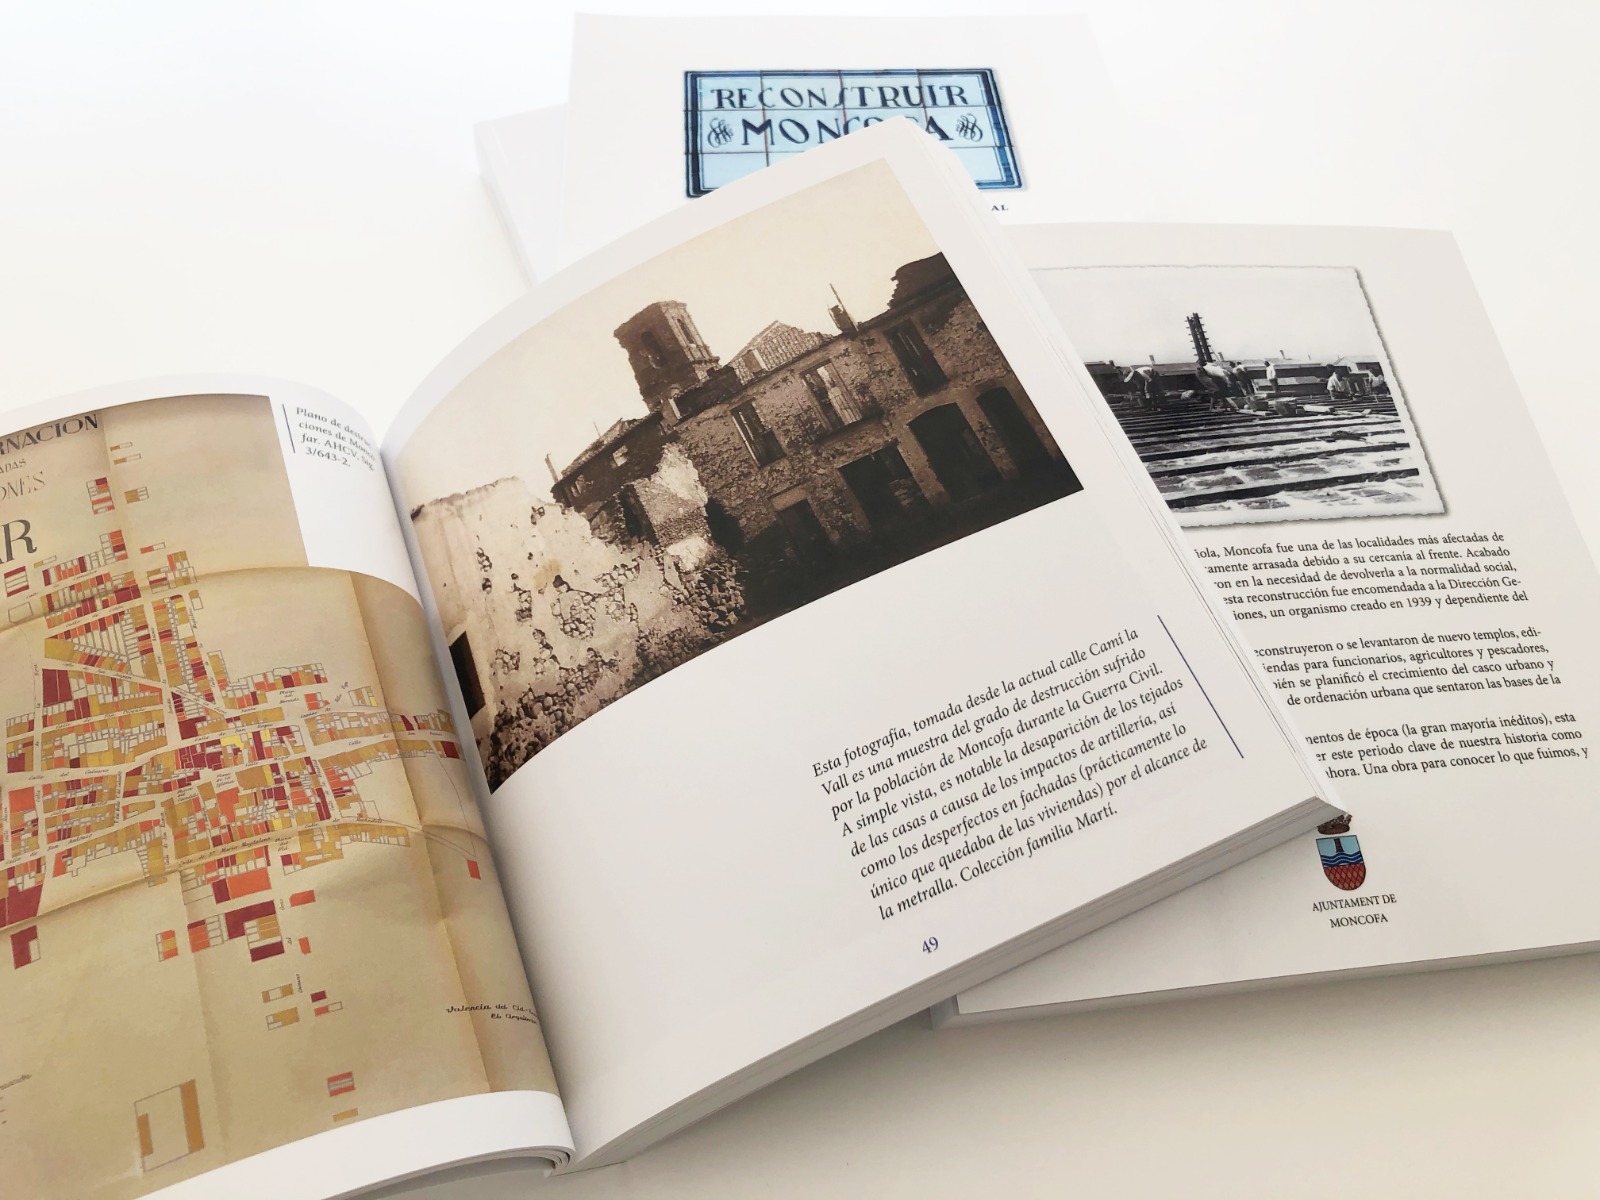 El Ayuntamiento de Moncofa pone el valor el patrimonio del pueblo con el libro “Reconstruir Moncofa”